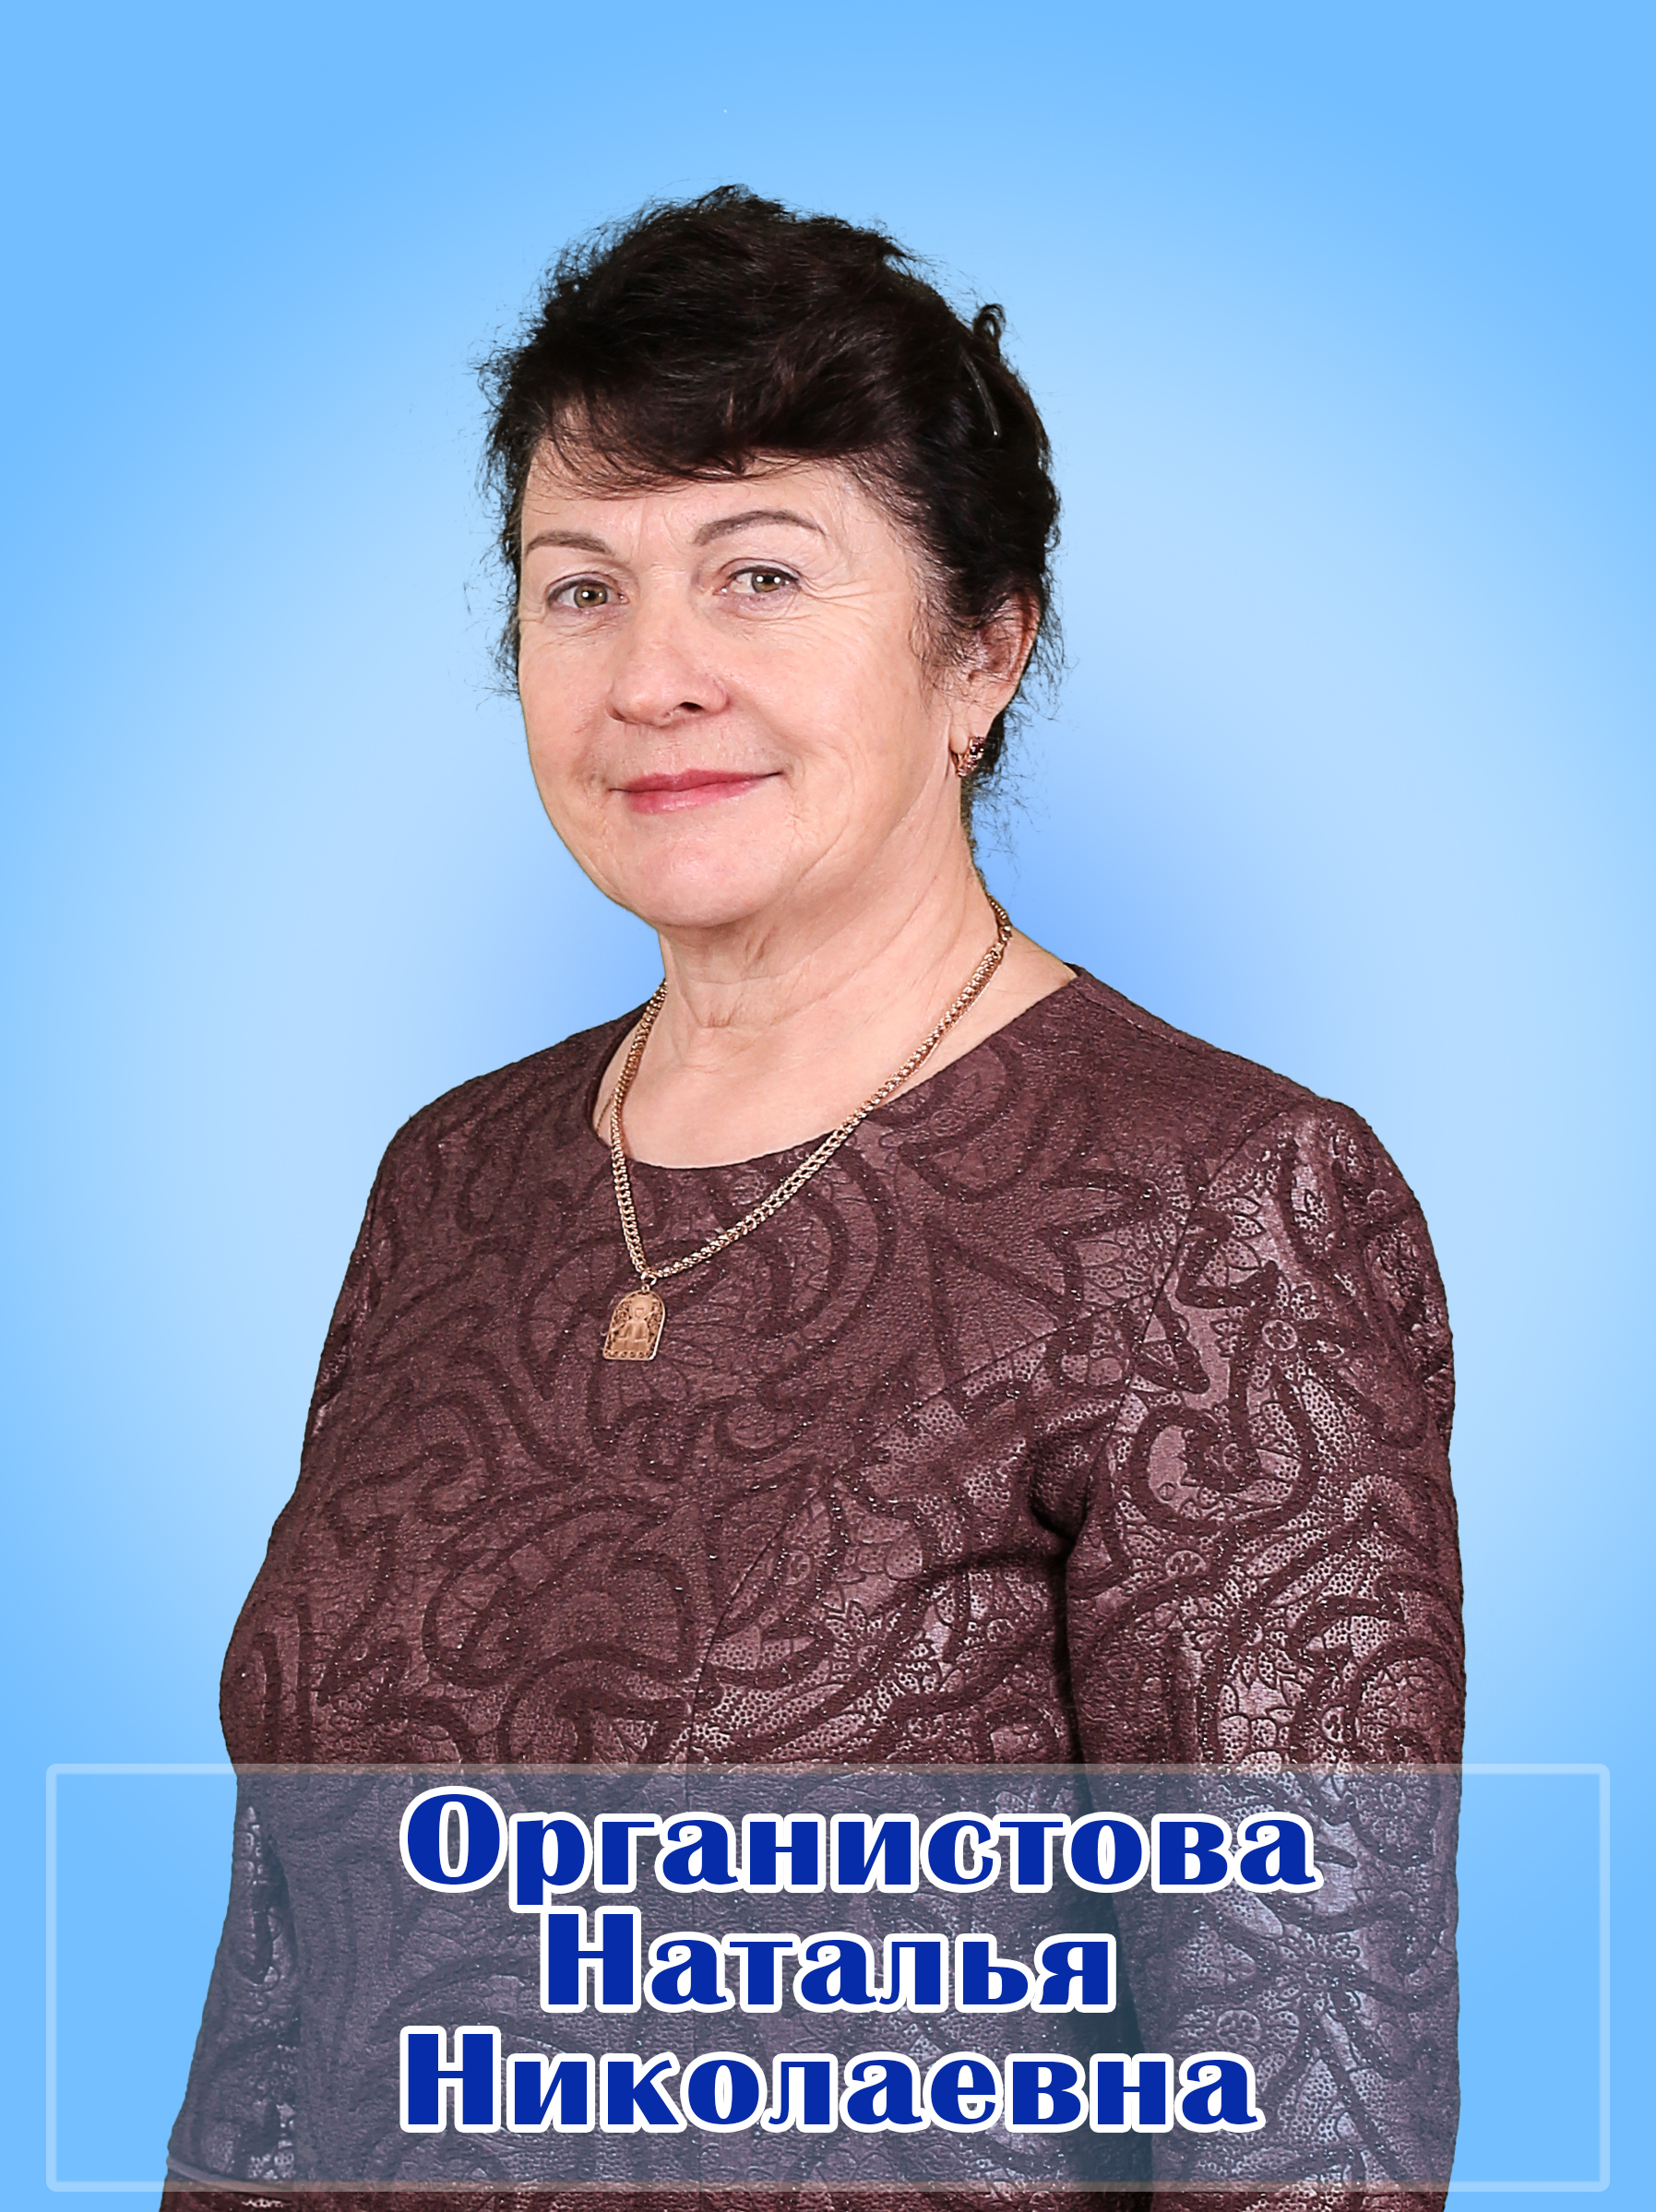 Органистова Наталья Николаевна.